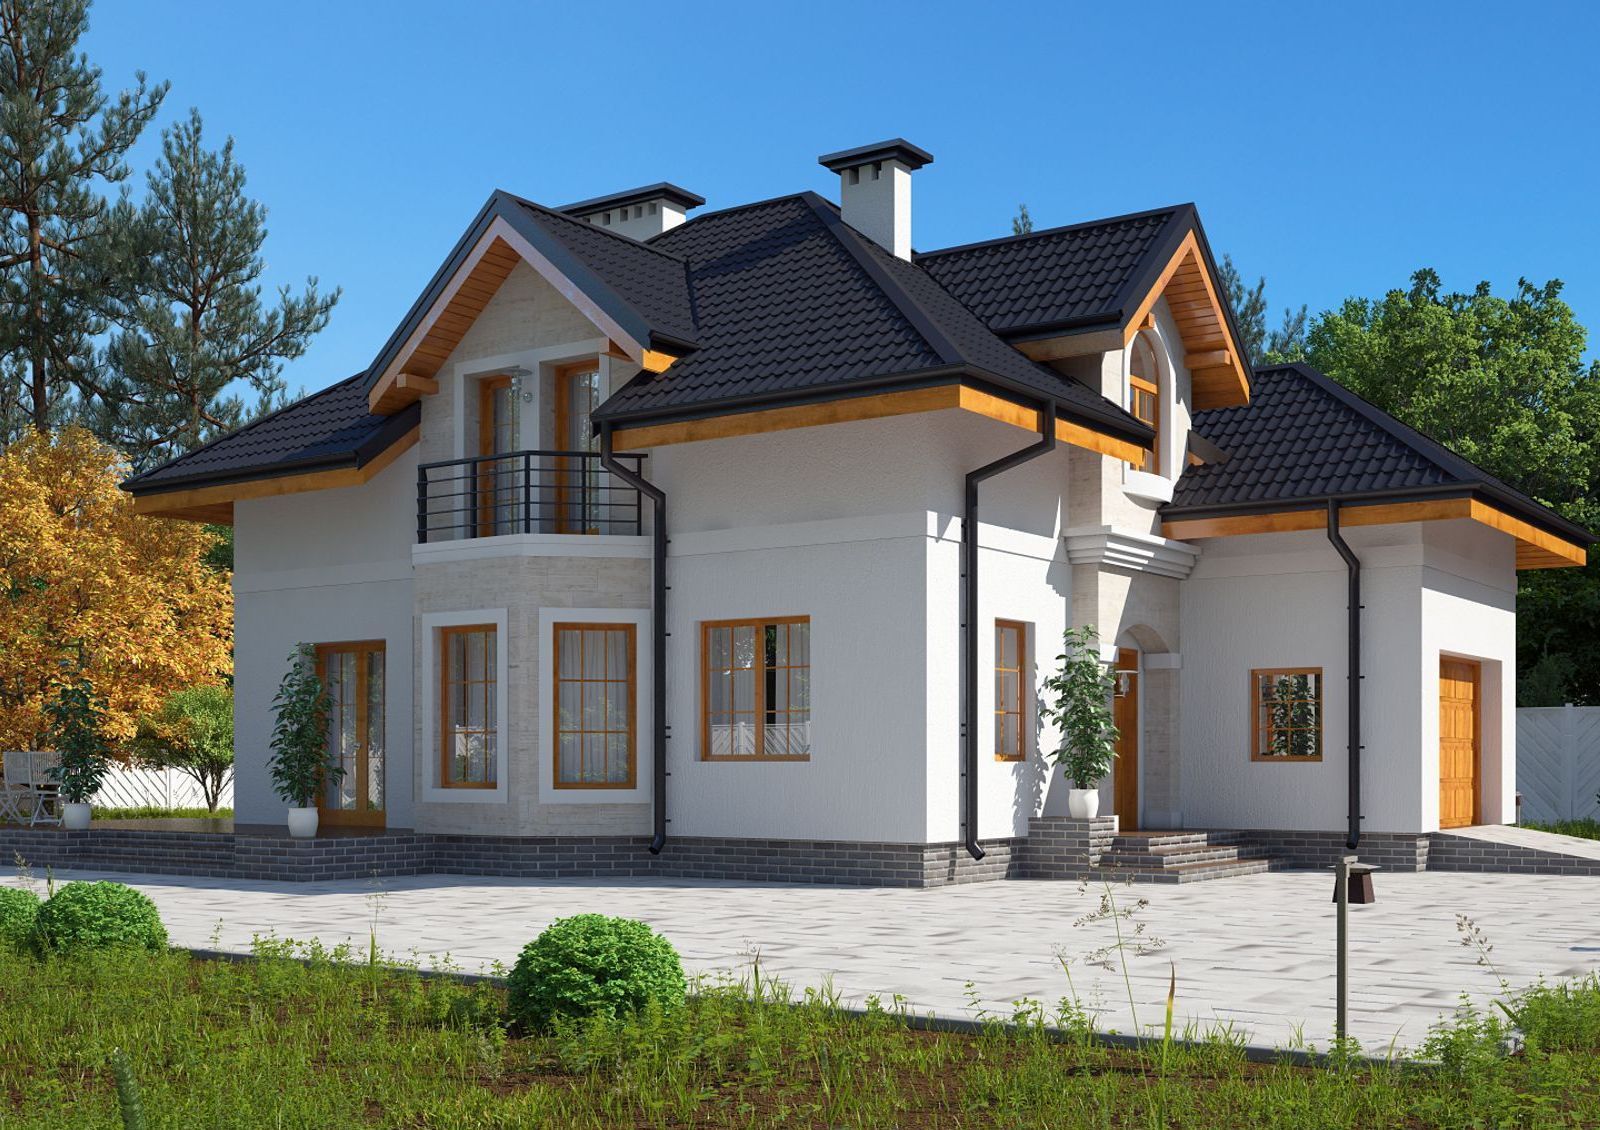 Купить или построить дом – что выгоднее  1e305952d8f69ffb4b80504fc443cbb9